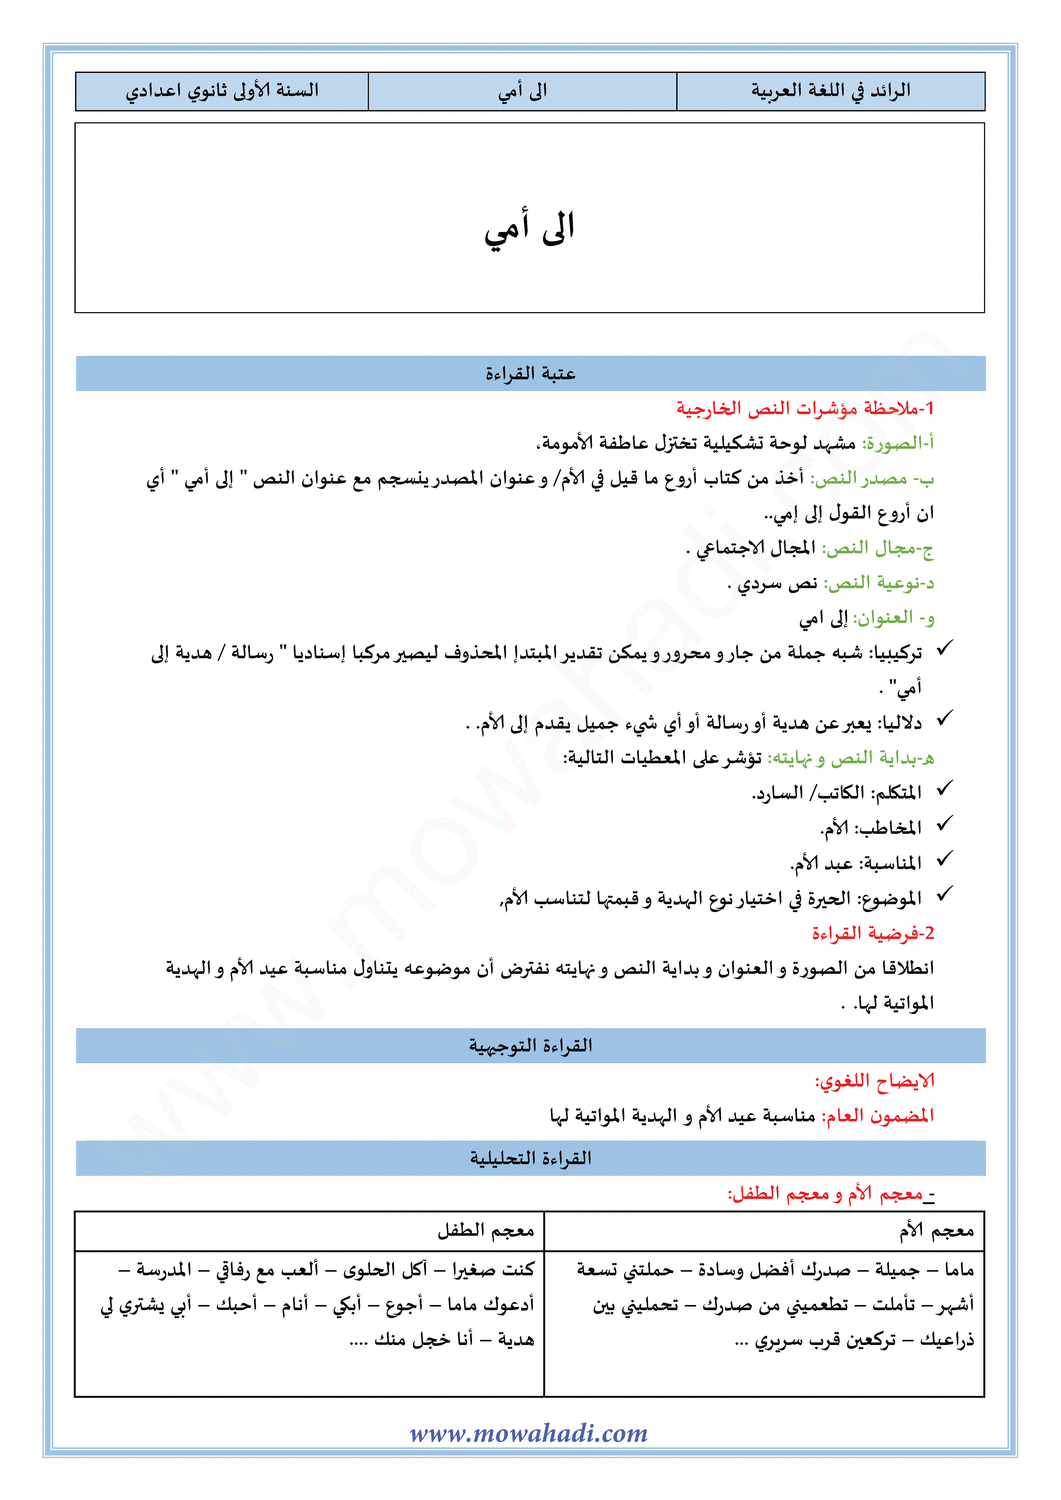 تحضير النص القرائي الى أمي للسنة الاولى اعدادي في مادة اللغة العربية 